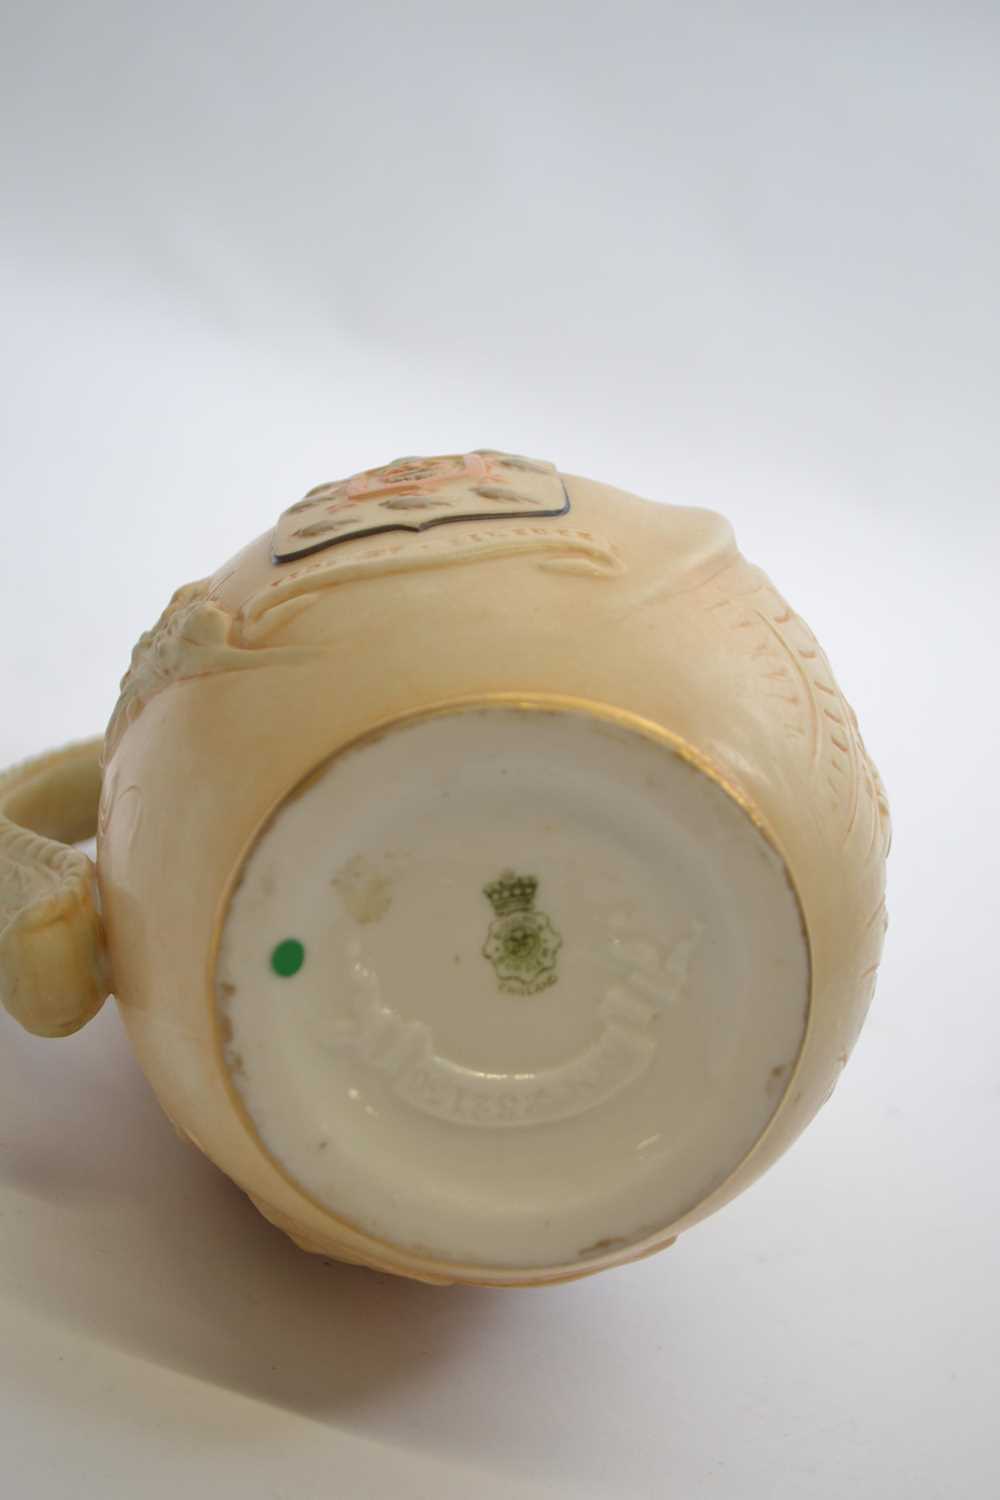 Doulton Burslam mug on ivory ground of Gladstone, 18cm high - Image 4 of 4